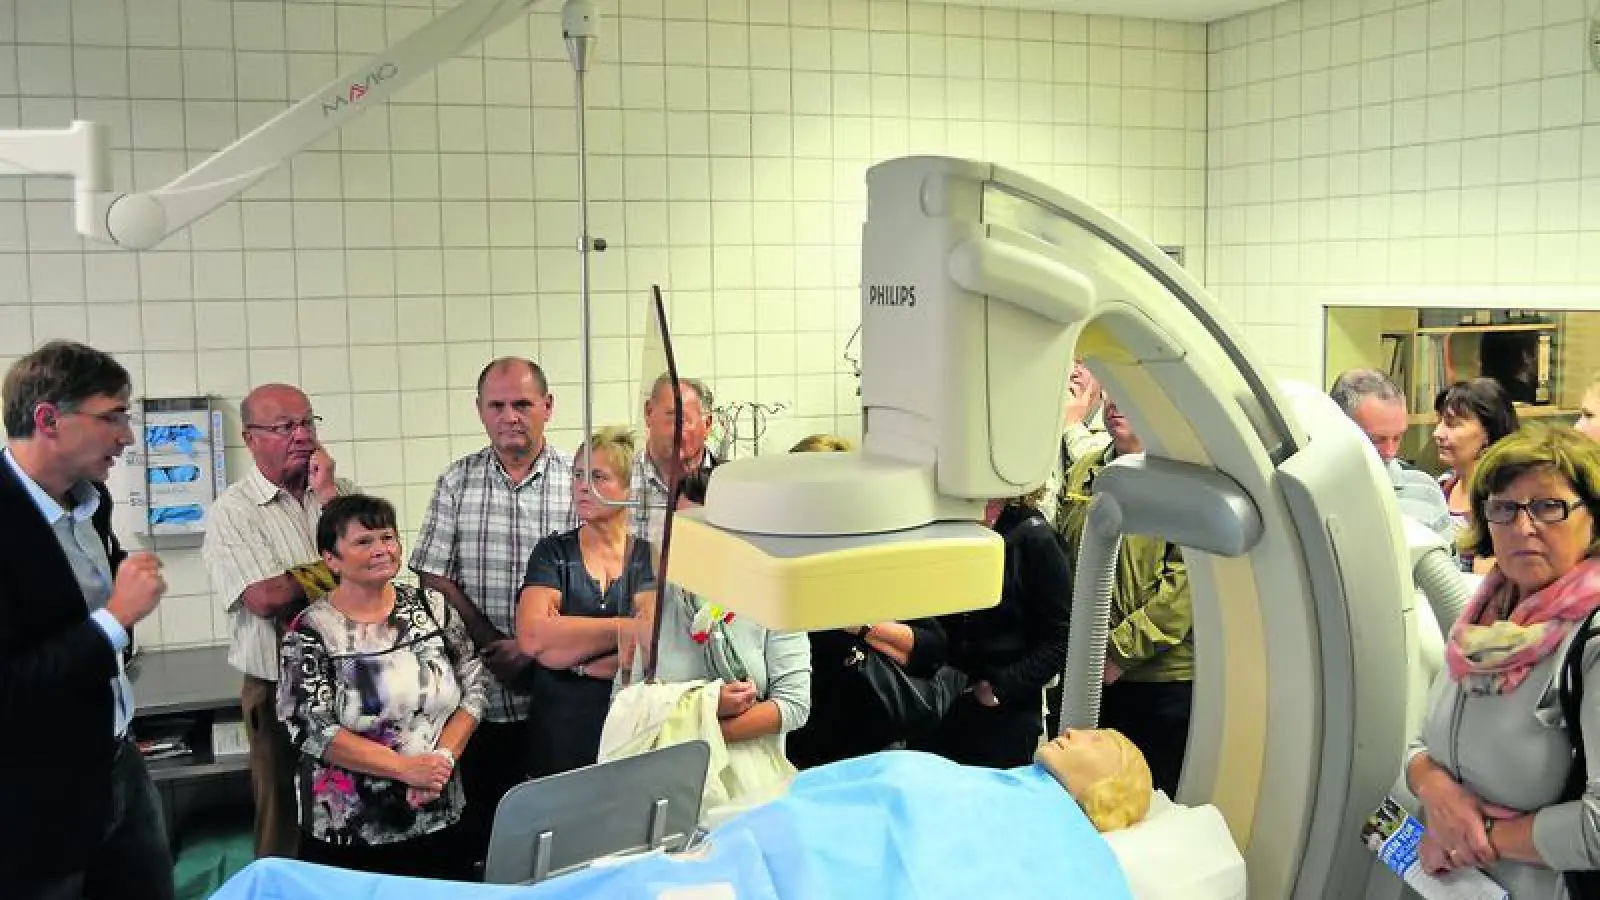 &lt;p&gt; &lt;x_bildunterschr&gt; &lt;b&gt;Dr. Heiko Methe &lt;/b&gt; informierte die interessierten Besucher über die Herzkatheter-Untersuchung, die jetzt am Aichacher Krankenhaus durch ein neues Gerät möglich wird. &lt;/x_bildunterschr&gt; &lt;/p&gt;